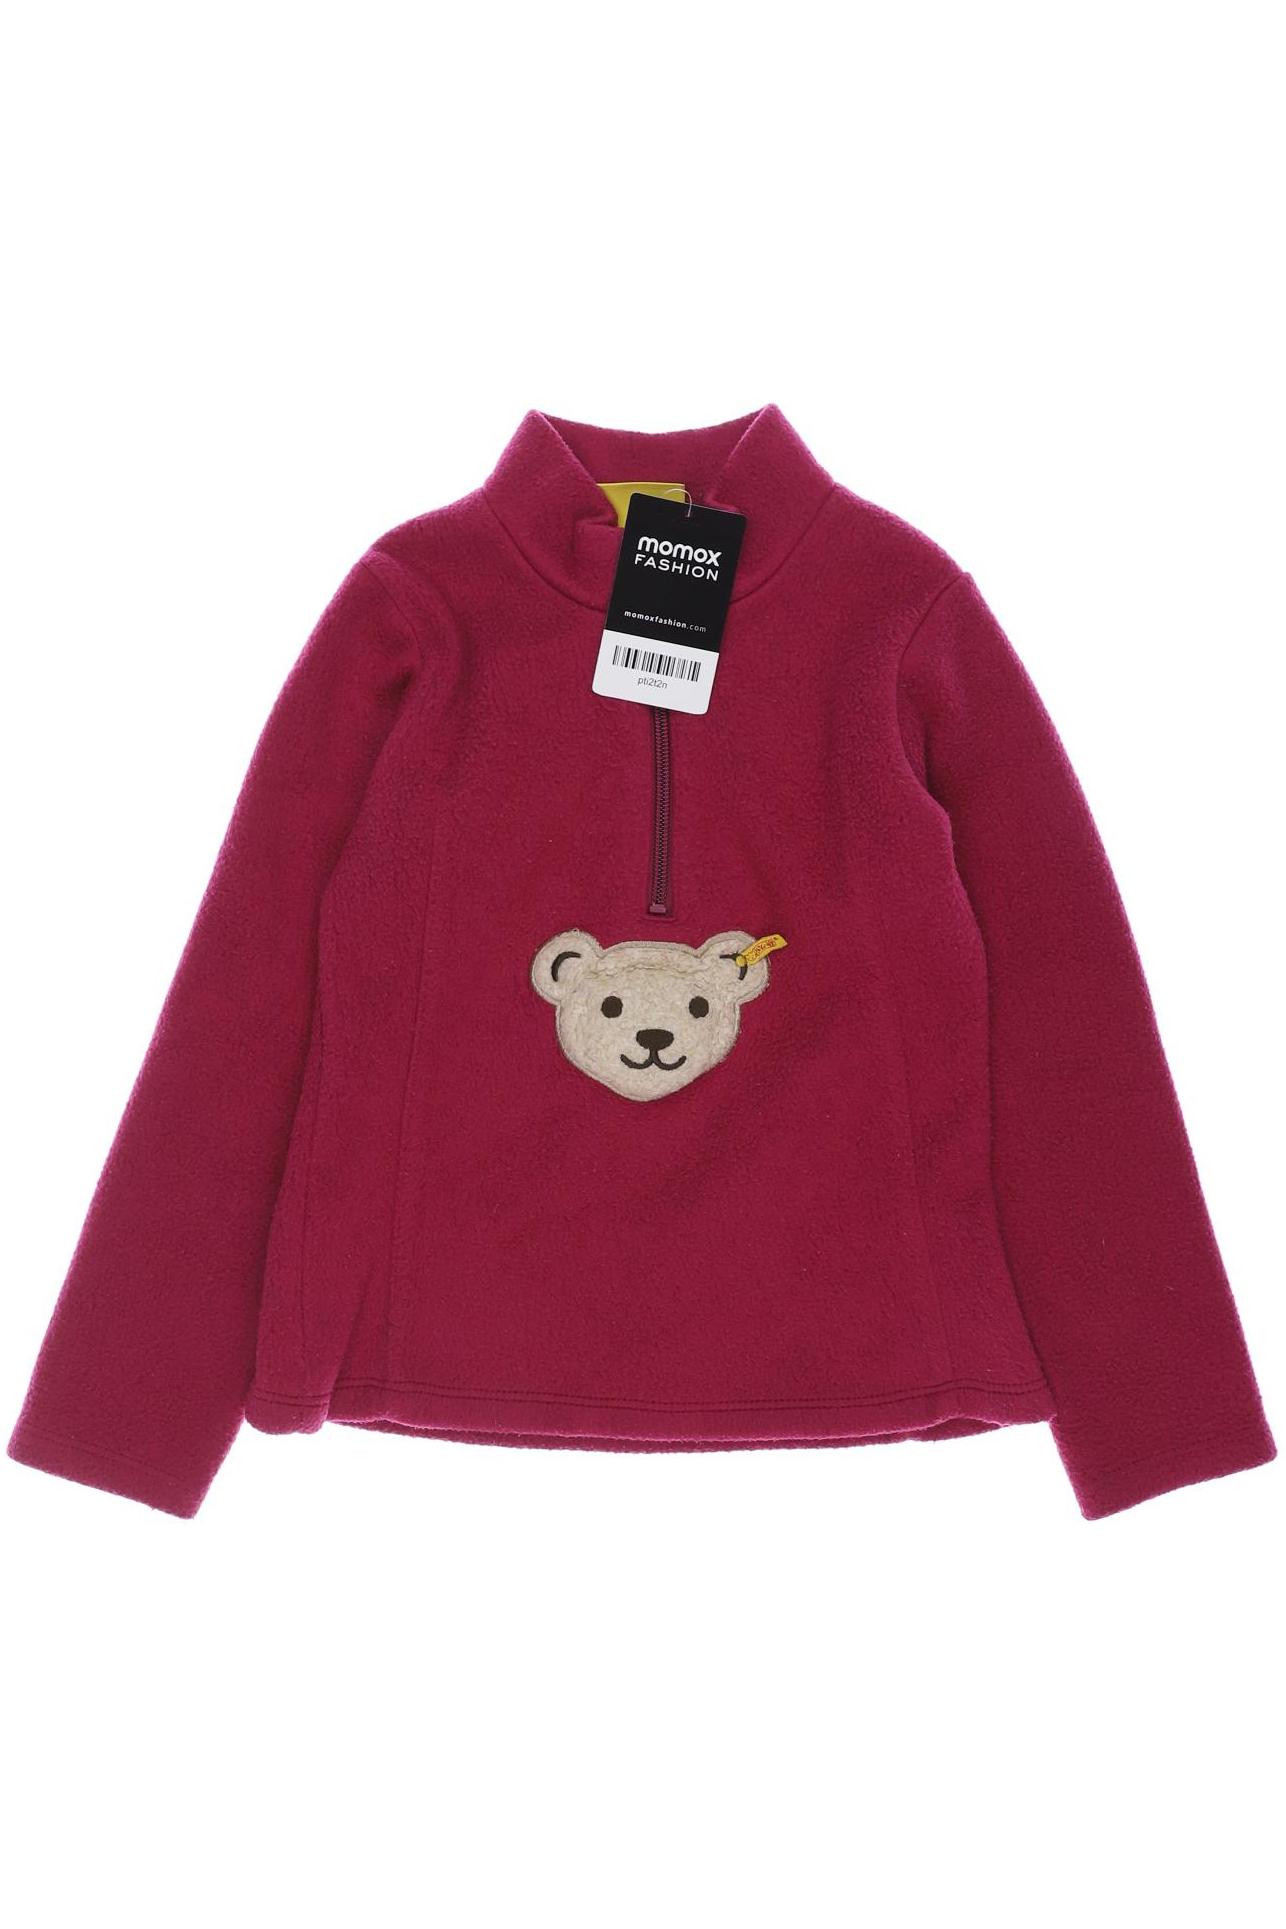 Steiff Damen Hoodies & Sweater, pink, Gr. 116 von Steiff